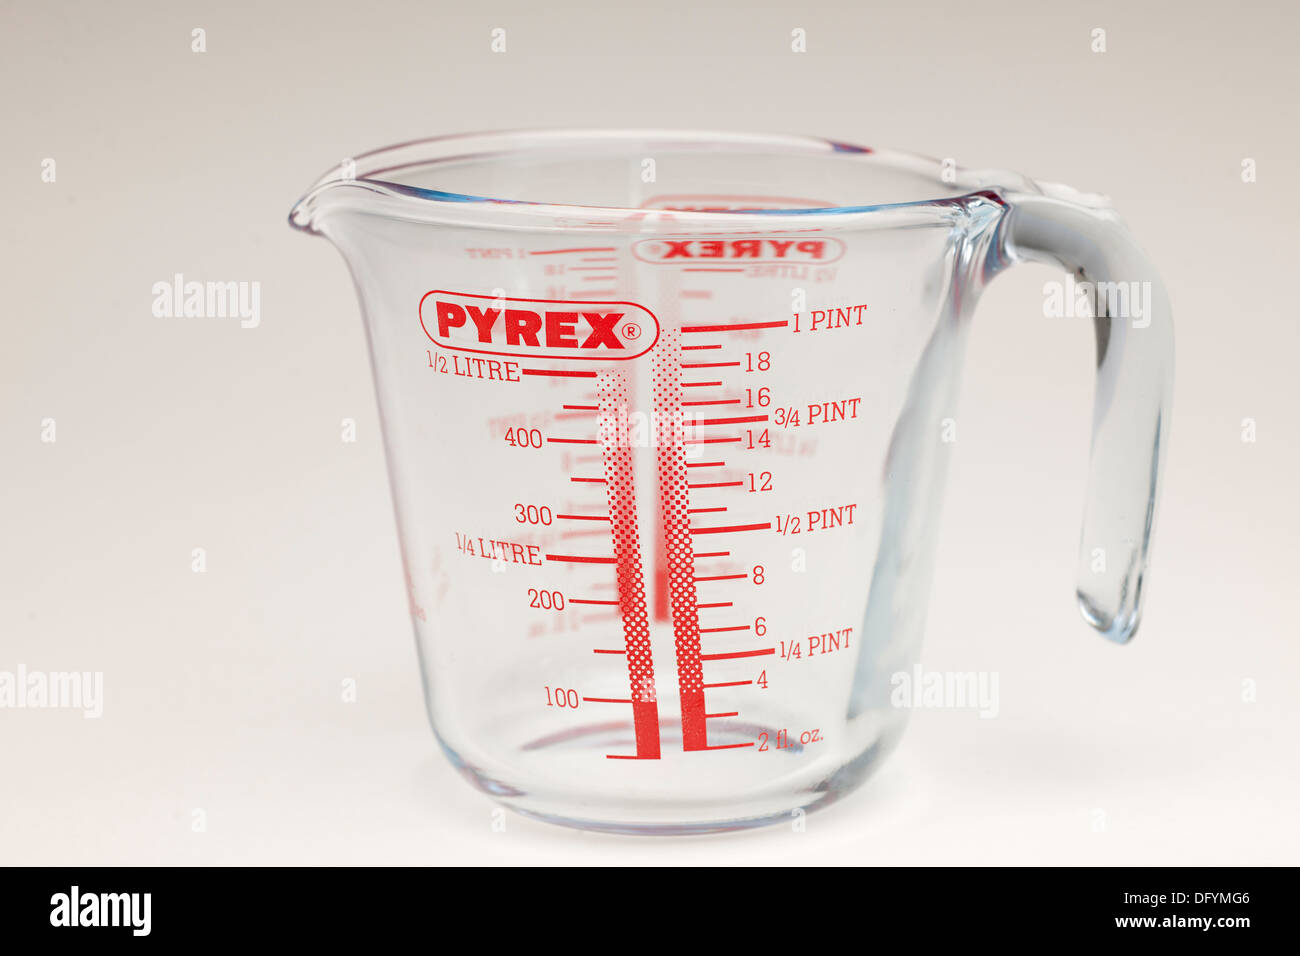 Pyrex glass 1 pint measuring jug Stock Photo